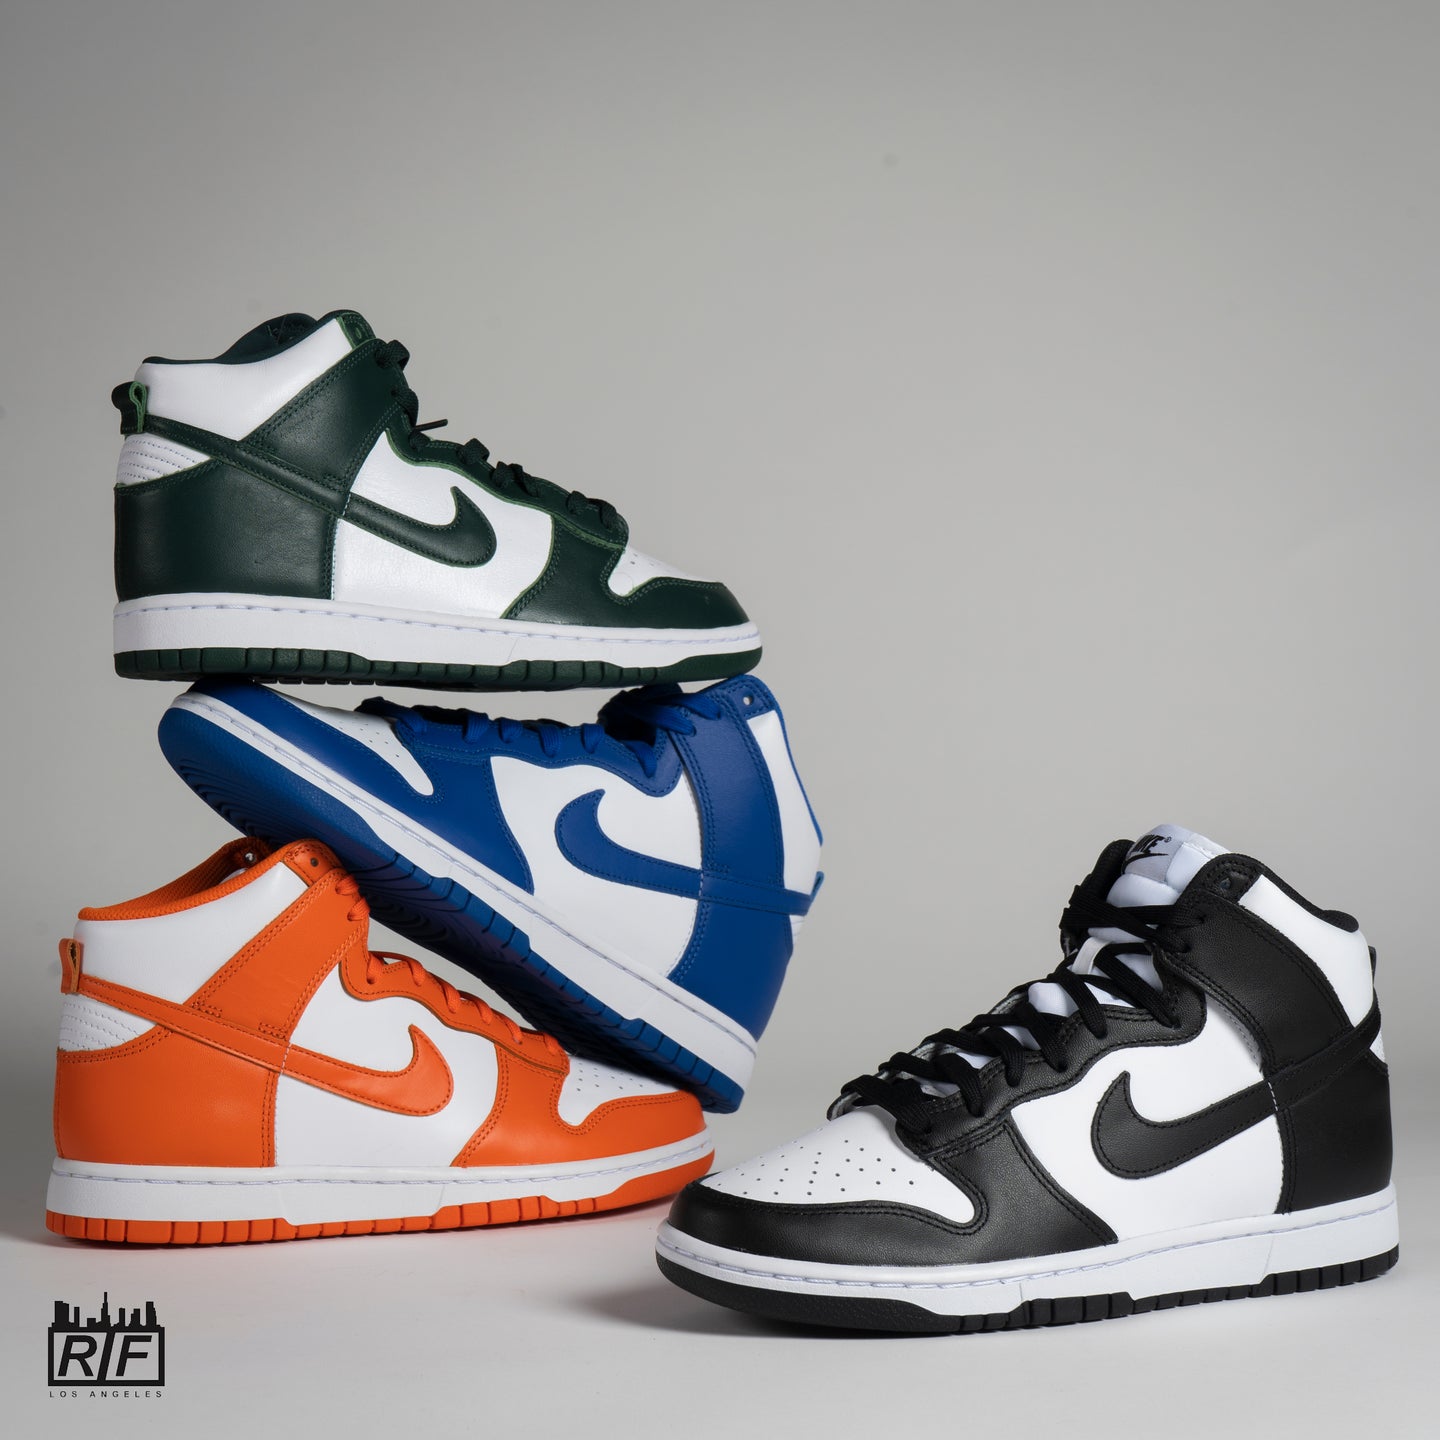 verschiedenen Nike Air Jordan Silhouetten